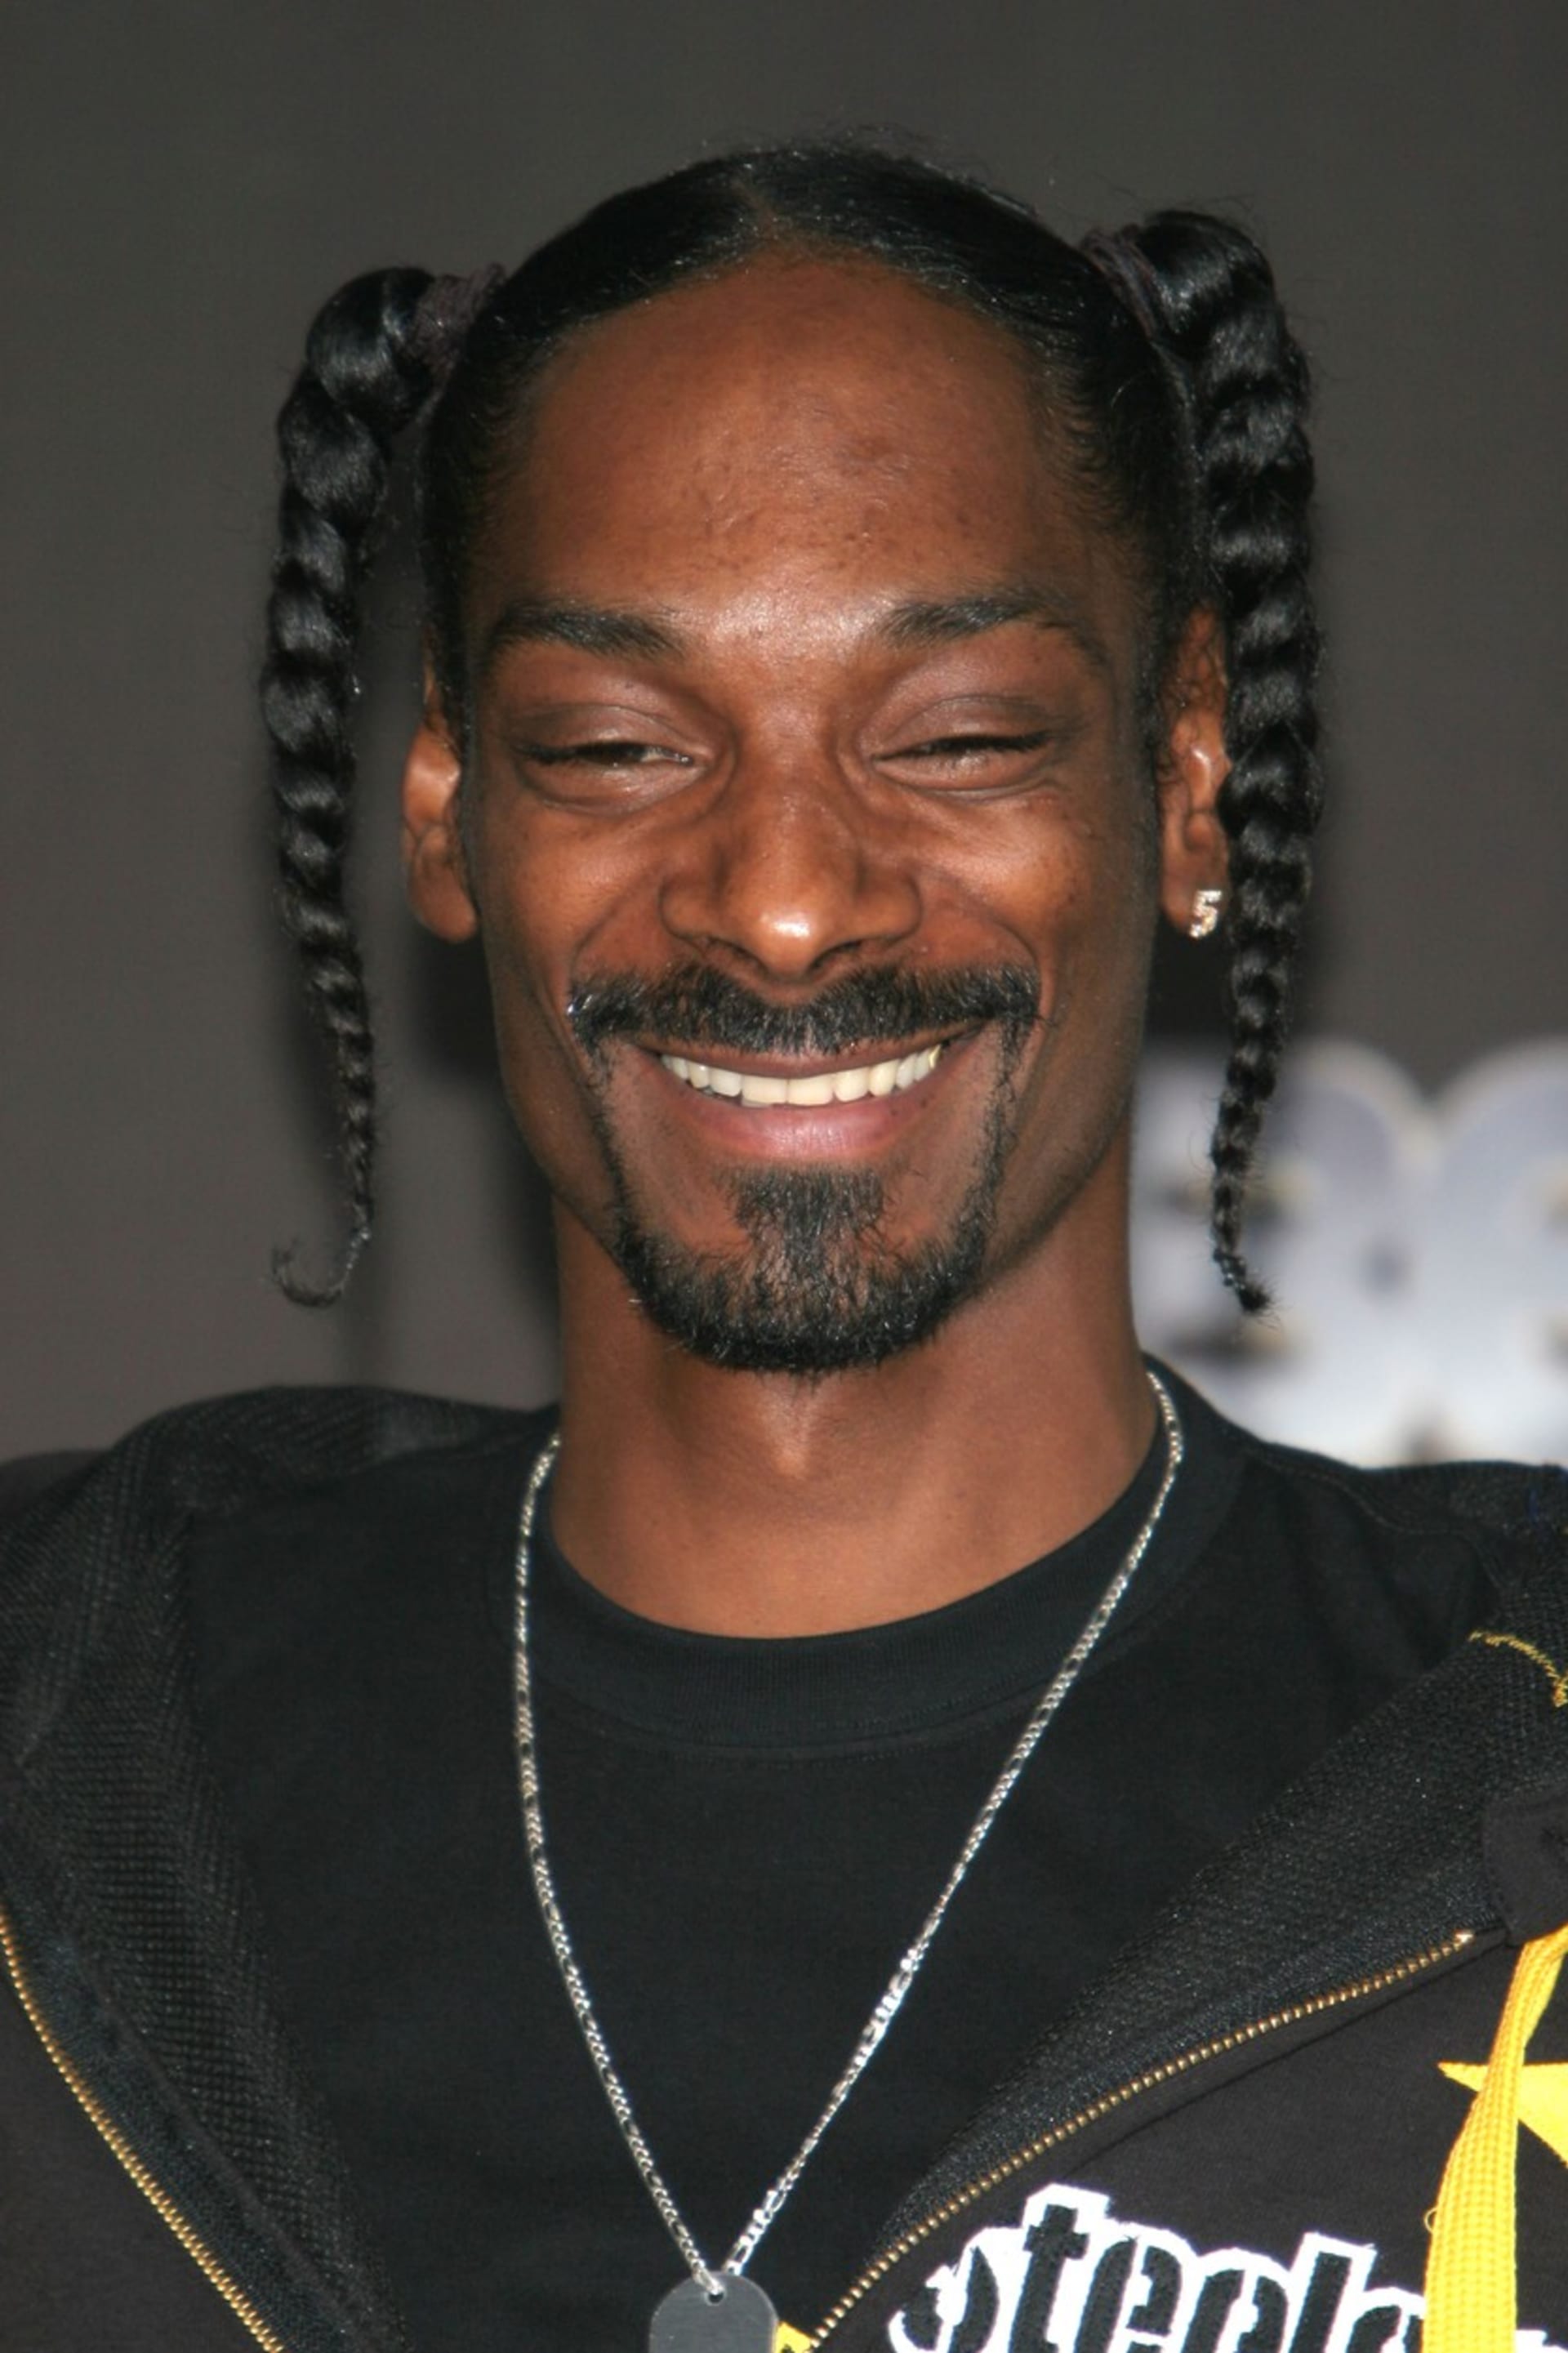 Snoop Dogg je další celebritou, která společnosti Meta prodala svou podobiznu.